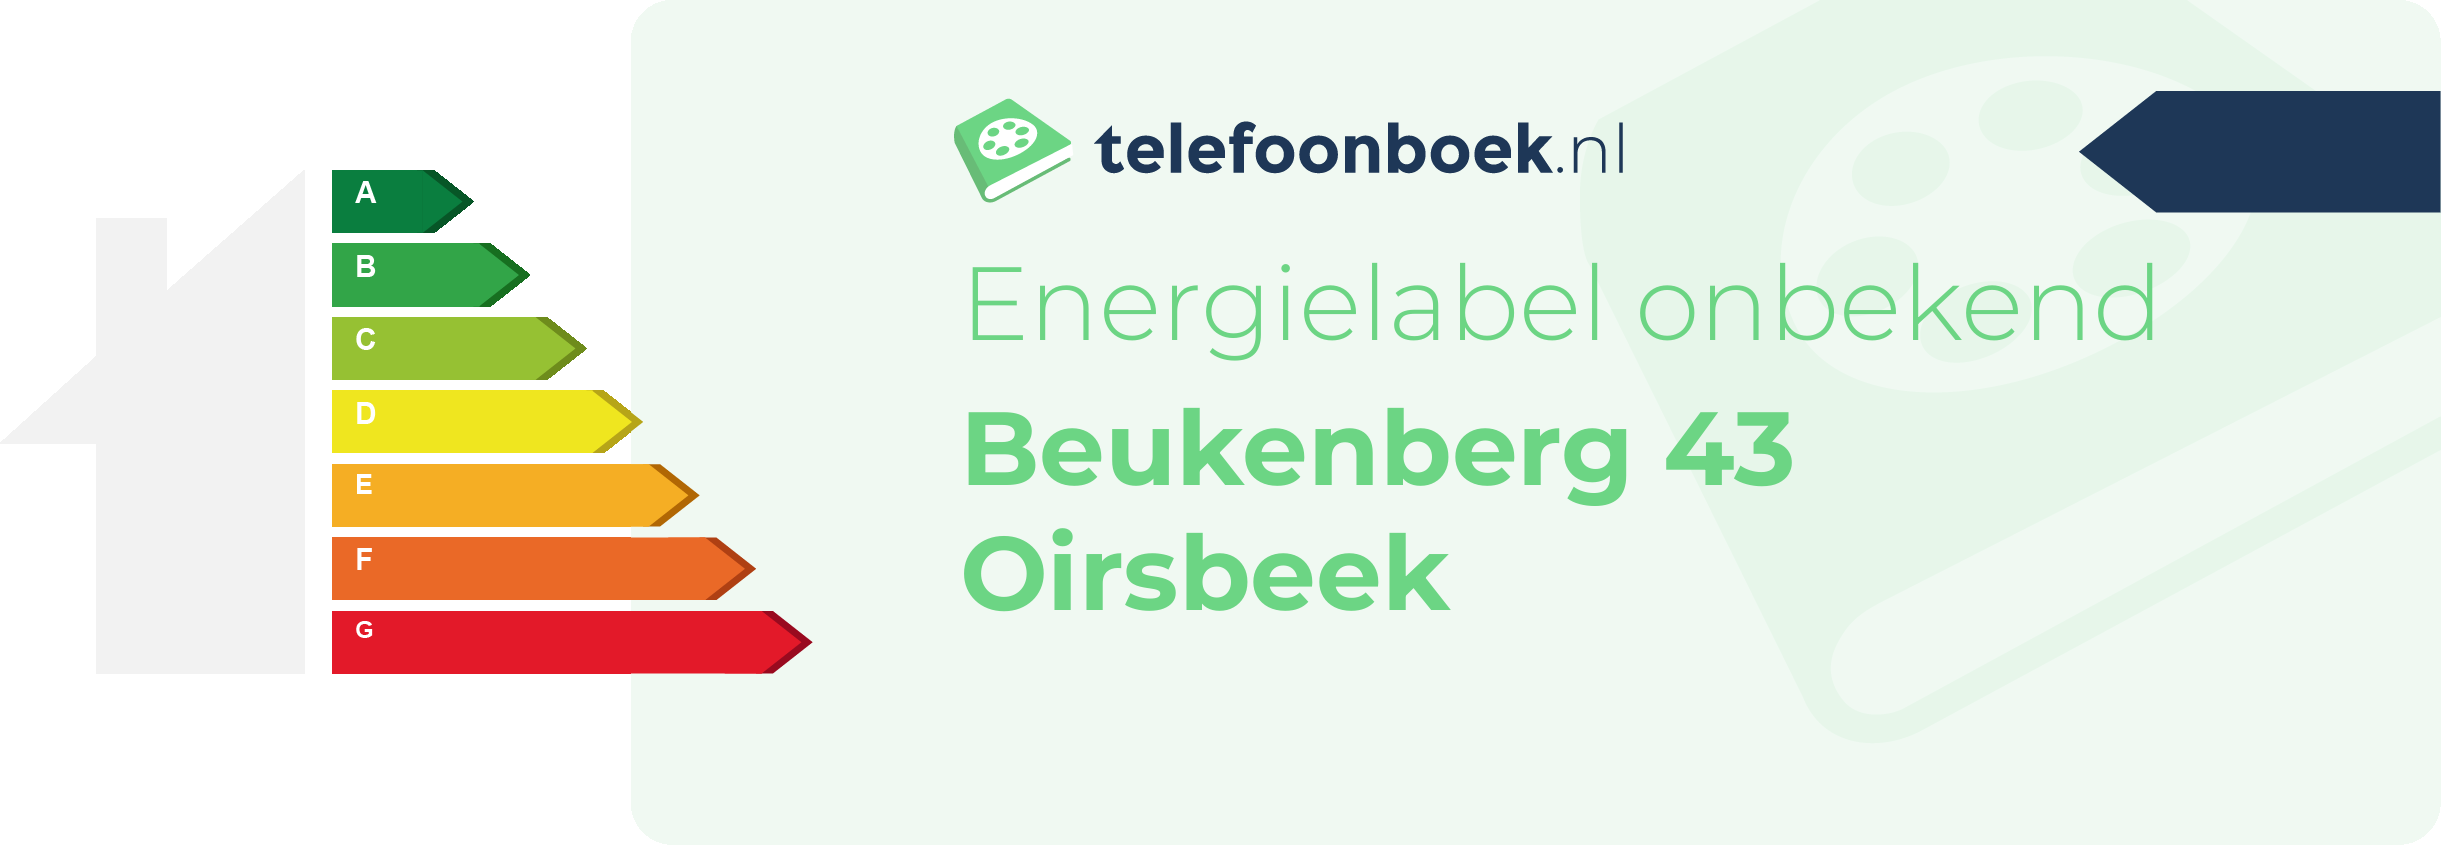 Energielabel Beukenberg 43 Oirsbeek